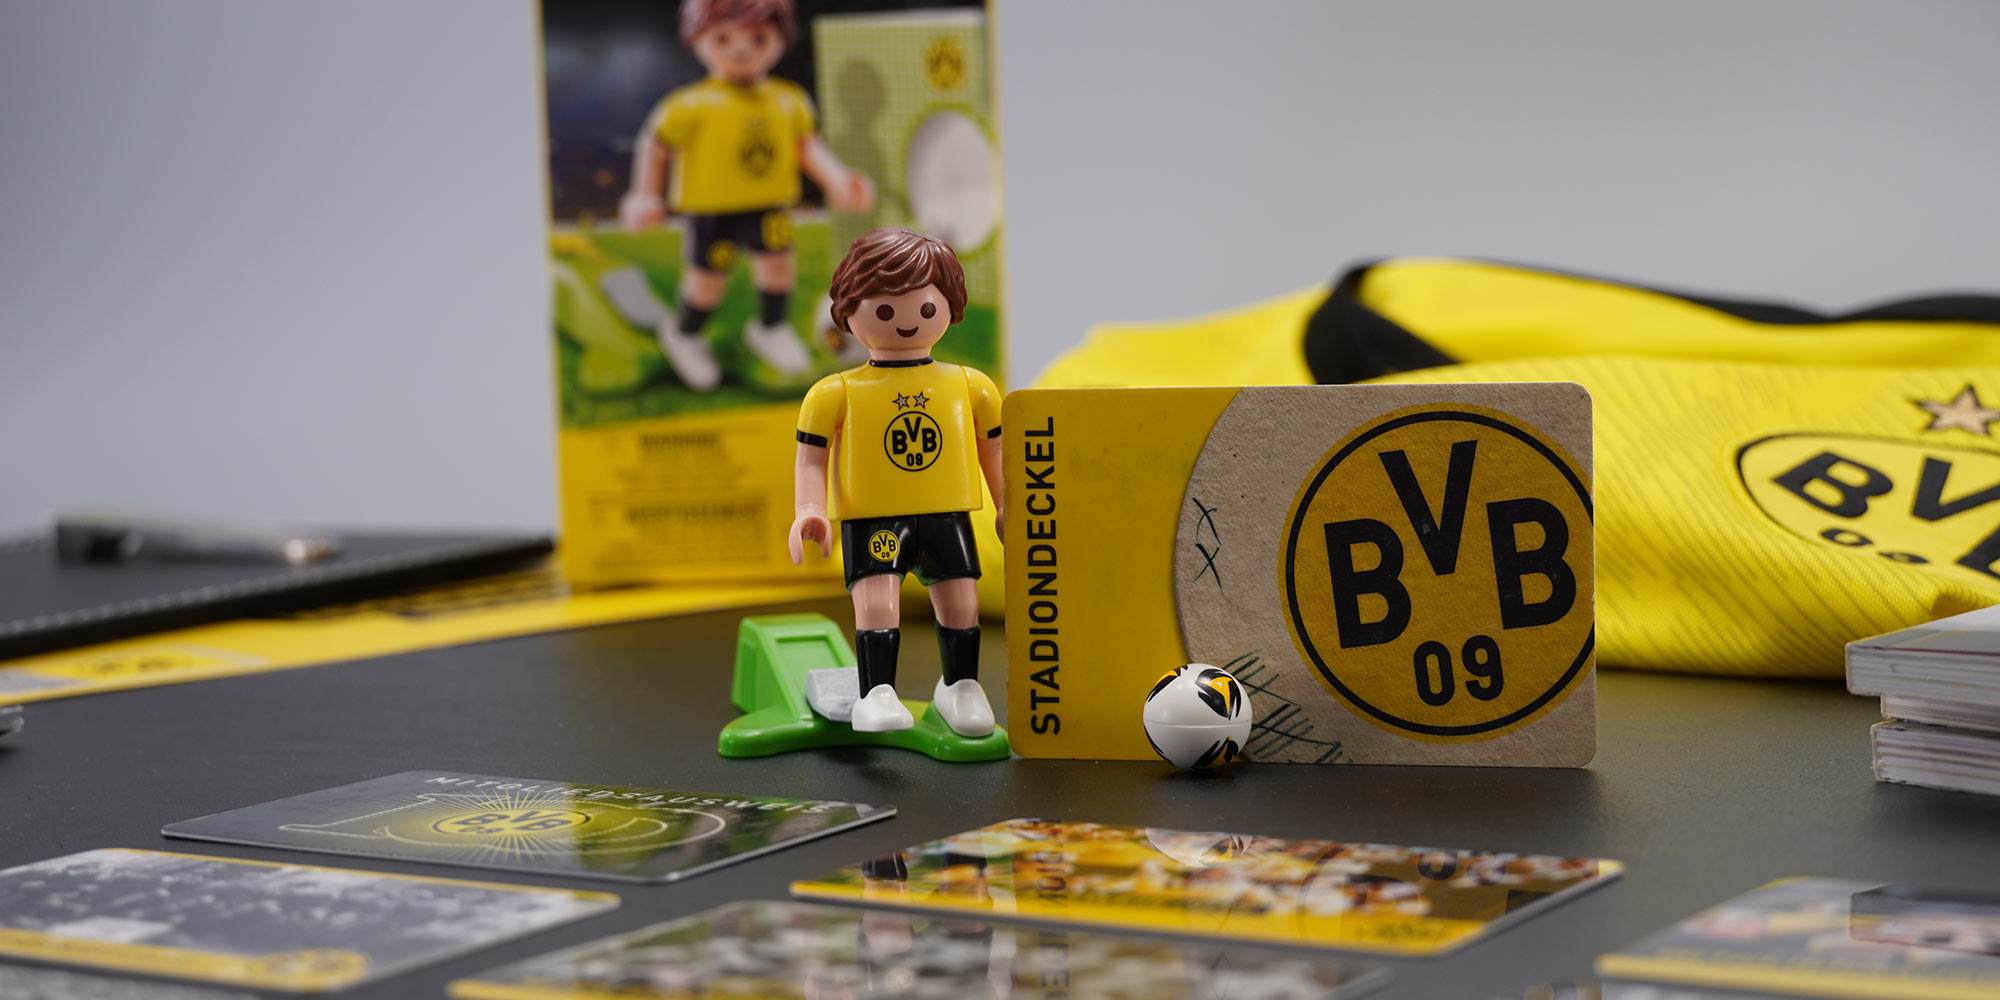 BVB-Playmobil Figur | Offizieller Fanartikel von Borussia Dortmund